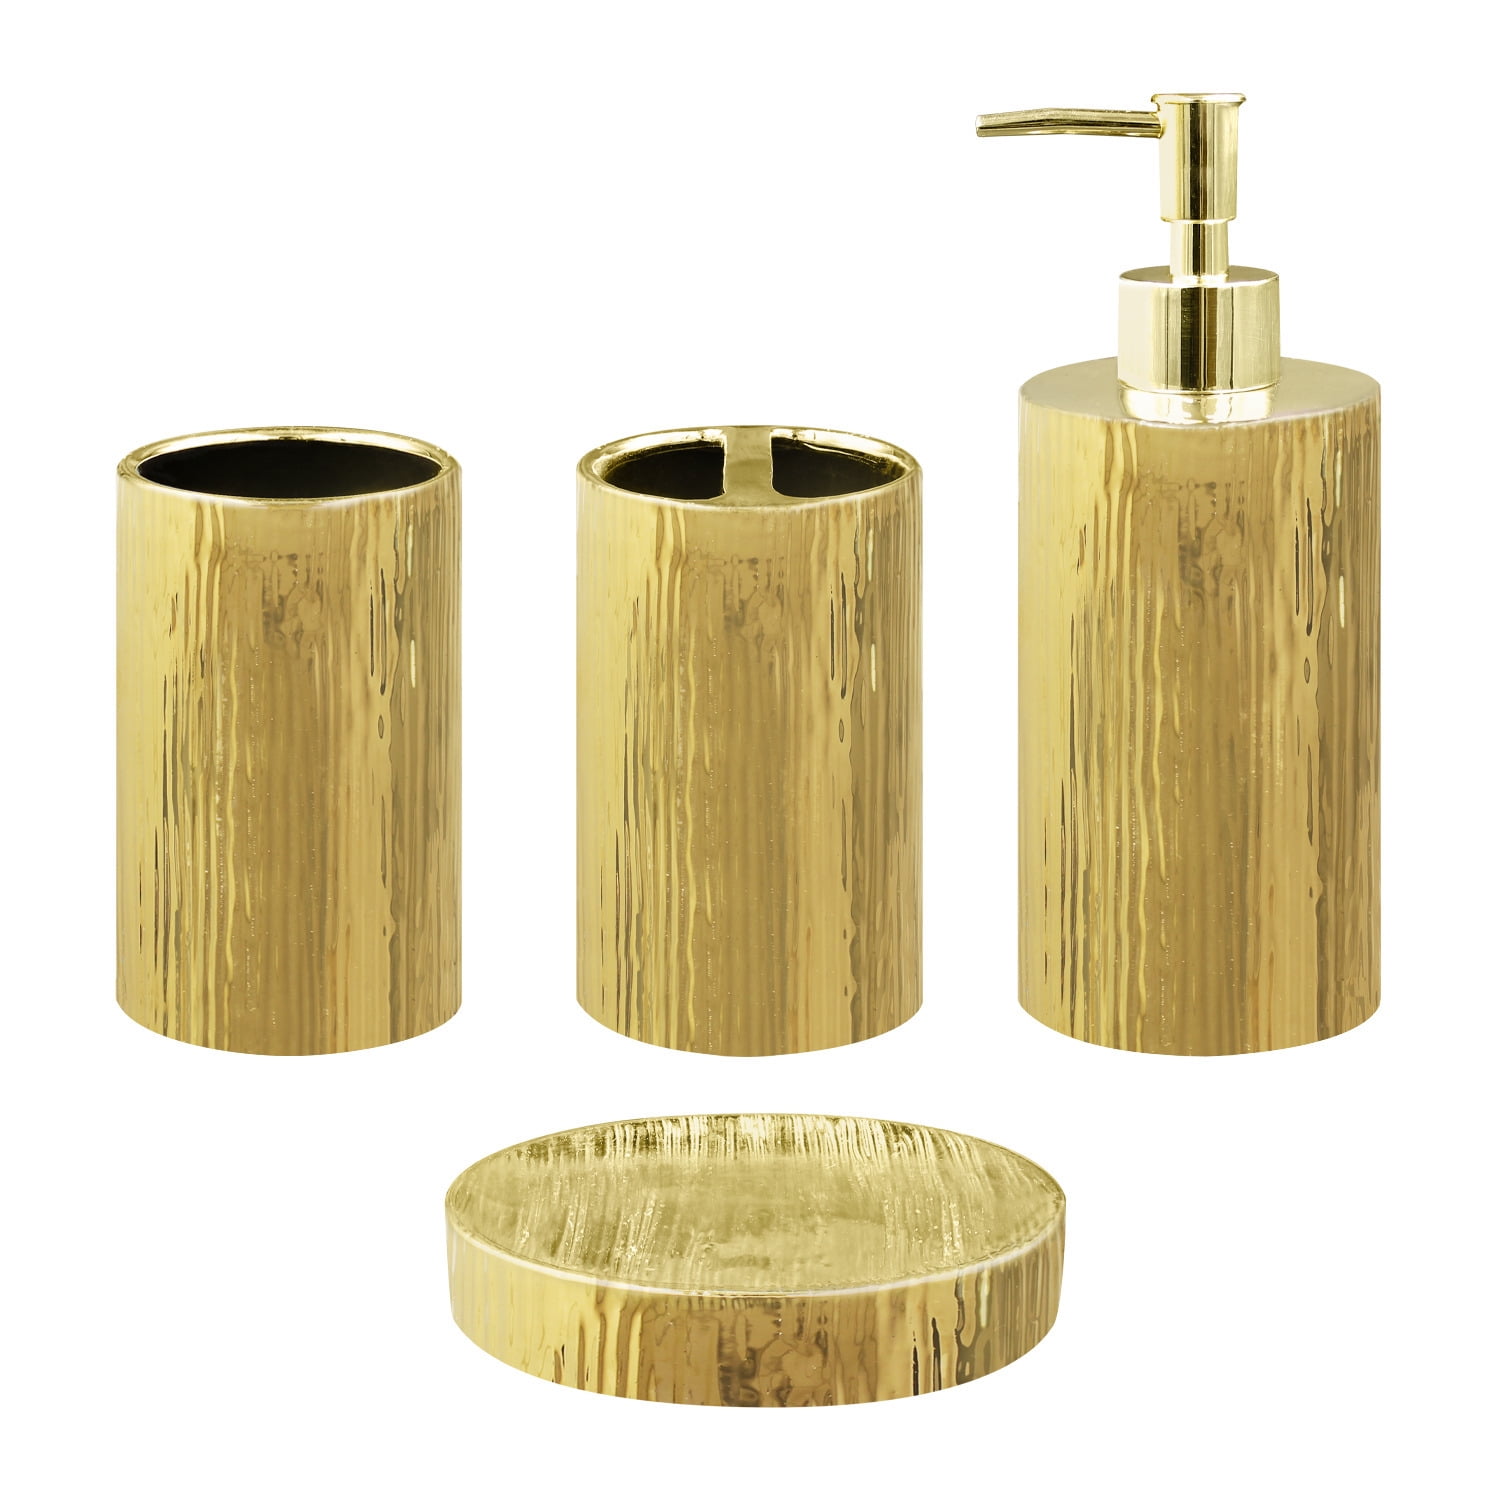 BLBYHO Matte Black and Gold Bathroom Accessories Set Complete, 4 Pcs Modern  Ceramic Bathroom Set, Bathroom Soap Dispenser Toothbrush Holder Set